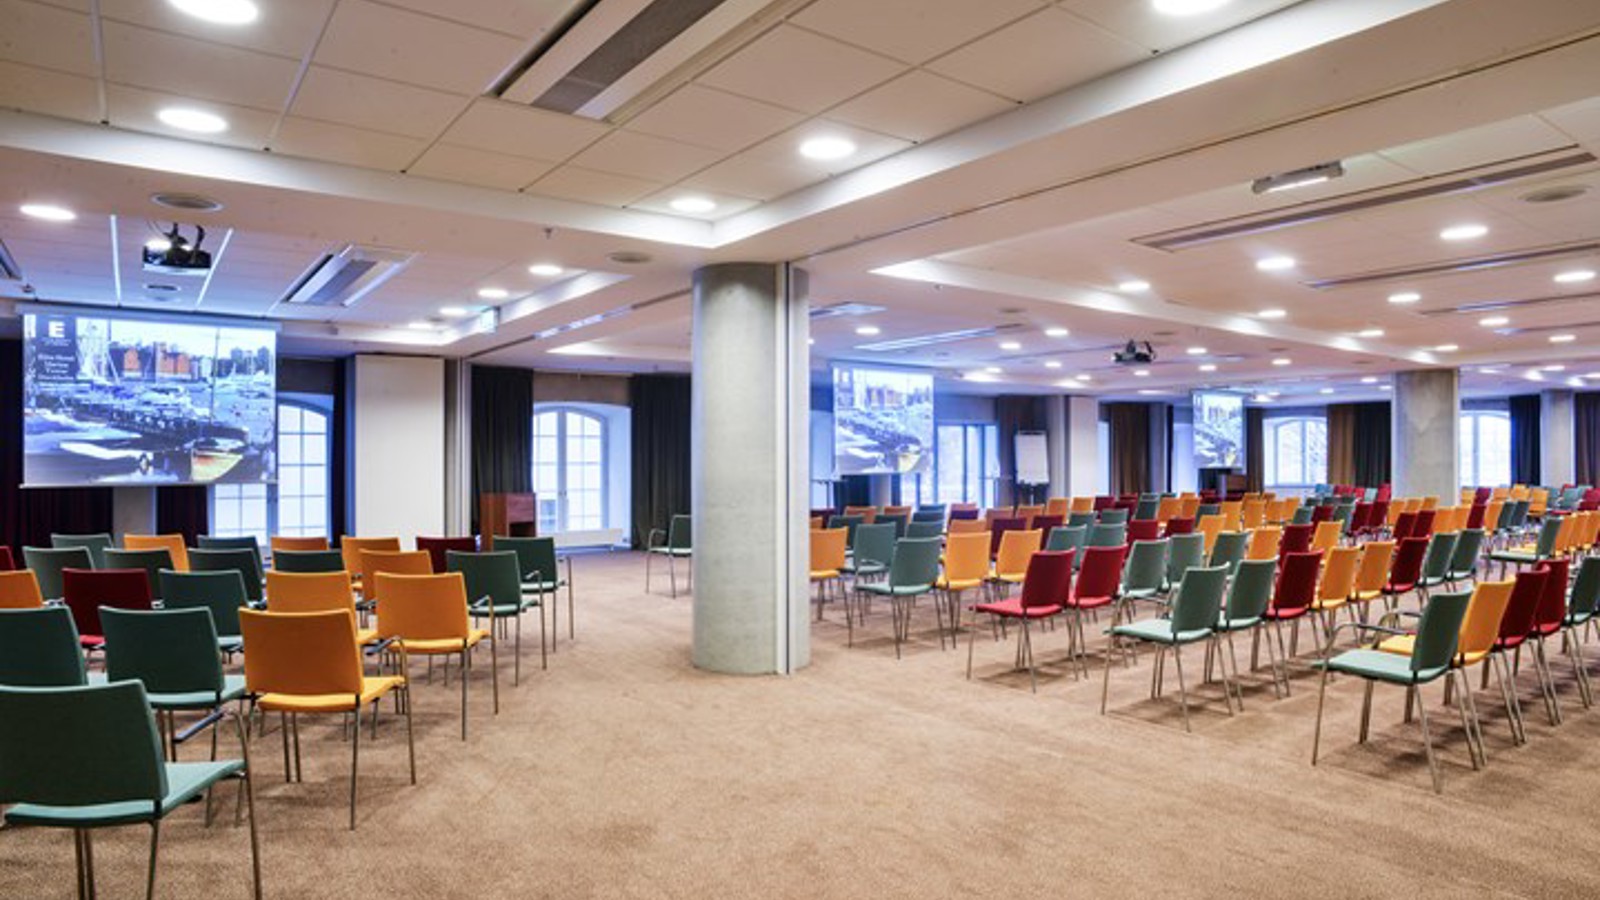 Konferensrum med biosittning, färgglada stolar och många fönster